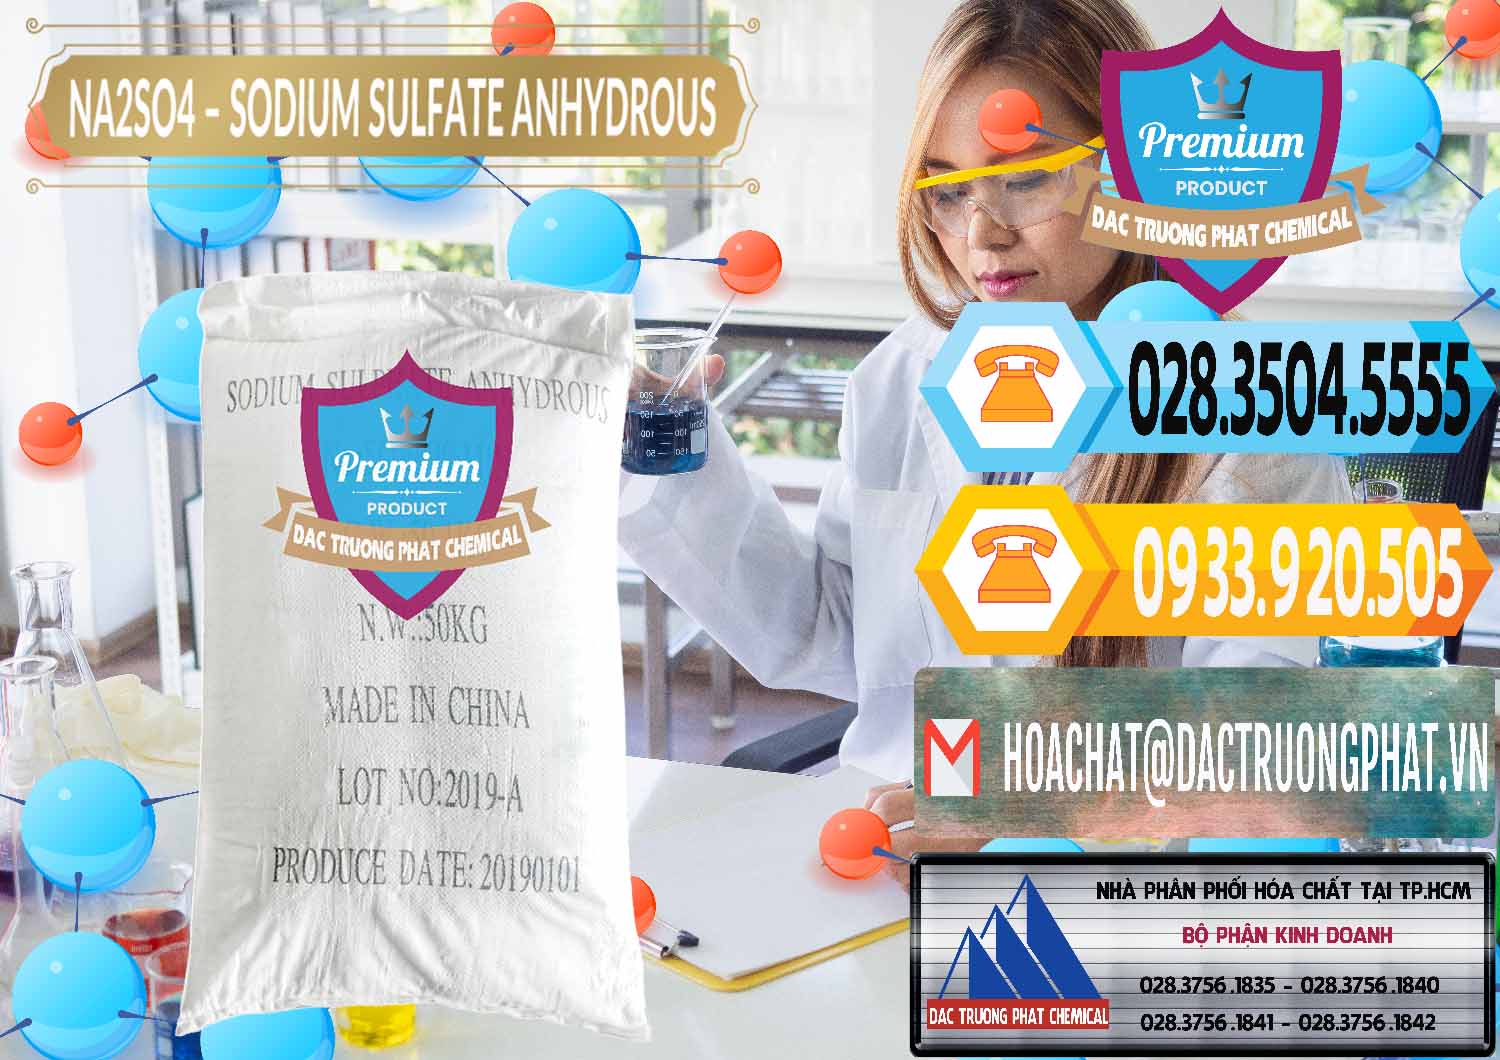 Nơi chuyên kinh doanh ( bán ) Sodium Sulphate - Muối Sunfat Na2SO4 PH 6-8 Trung Quốc China - 0099 - Đơn vị chuyên nhập khẩu & cung cấp hóa chất tại TP.HCM - hoachattayrua.net